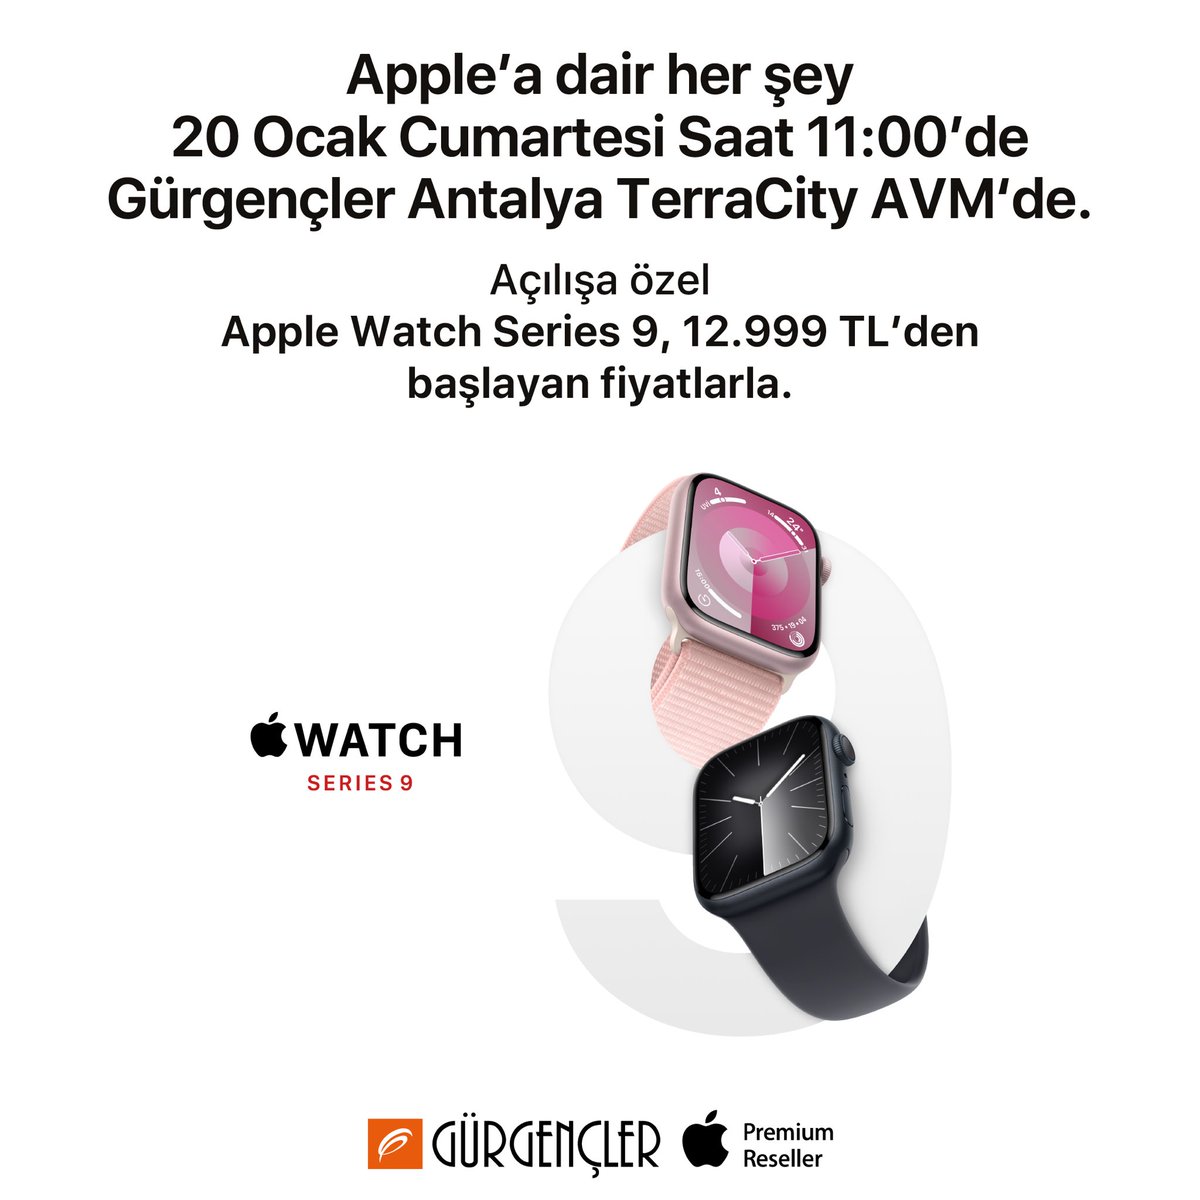 20 Ocak Cumartesi Antalya TerraCity AVM Apple Premium Reseller mağazamızın büyük açılışına özel, Apple Watch Series 9 modelleri 12.999 TL’den başlayan fiyatlarla. 🤩 Detaylı bilgi için: gurgencler.com.tr/antalyaterraci…   #Apple #Gürgençler #Antalya #TerraCityAVM #BüyükAçılış #AppleWatch